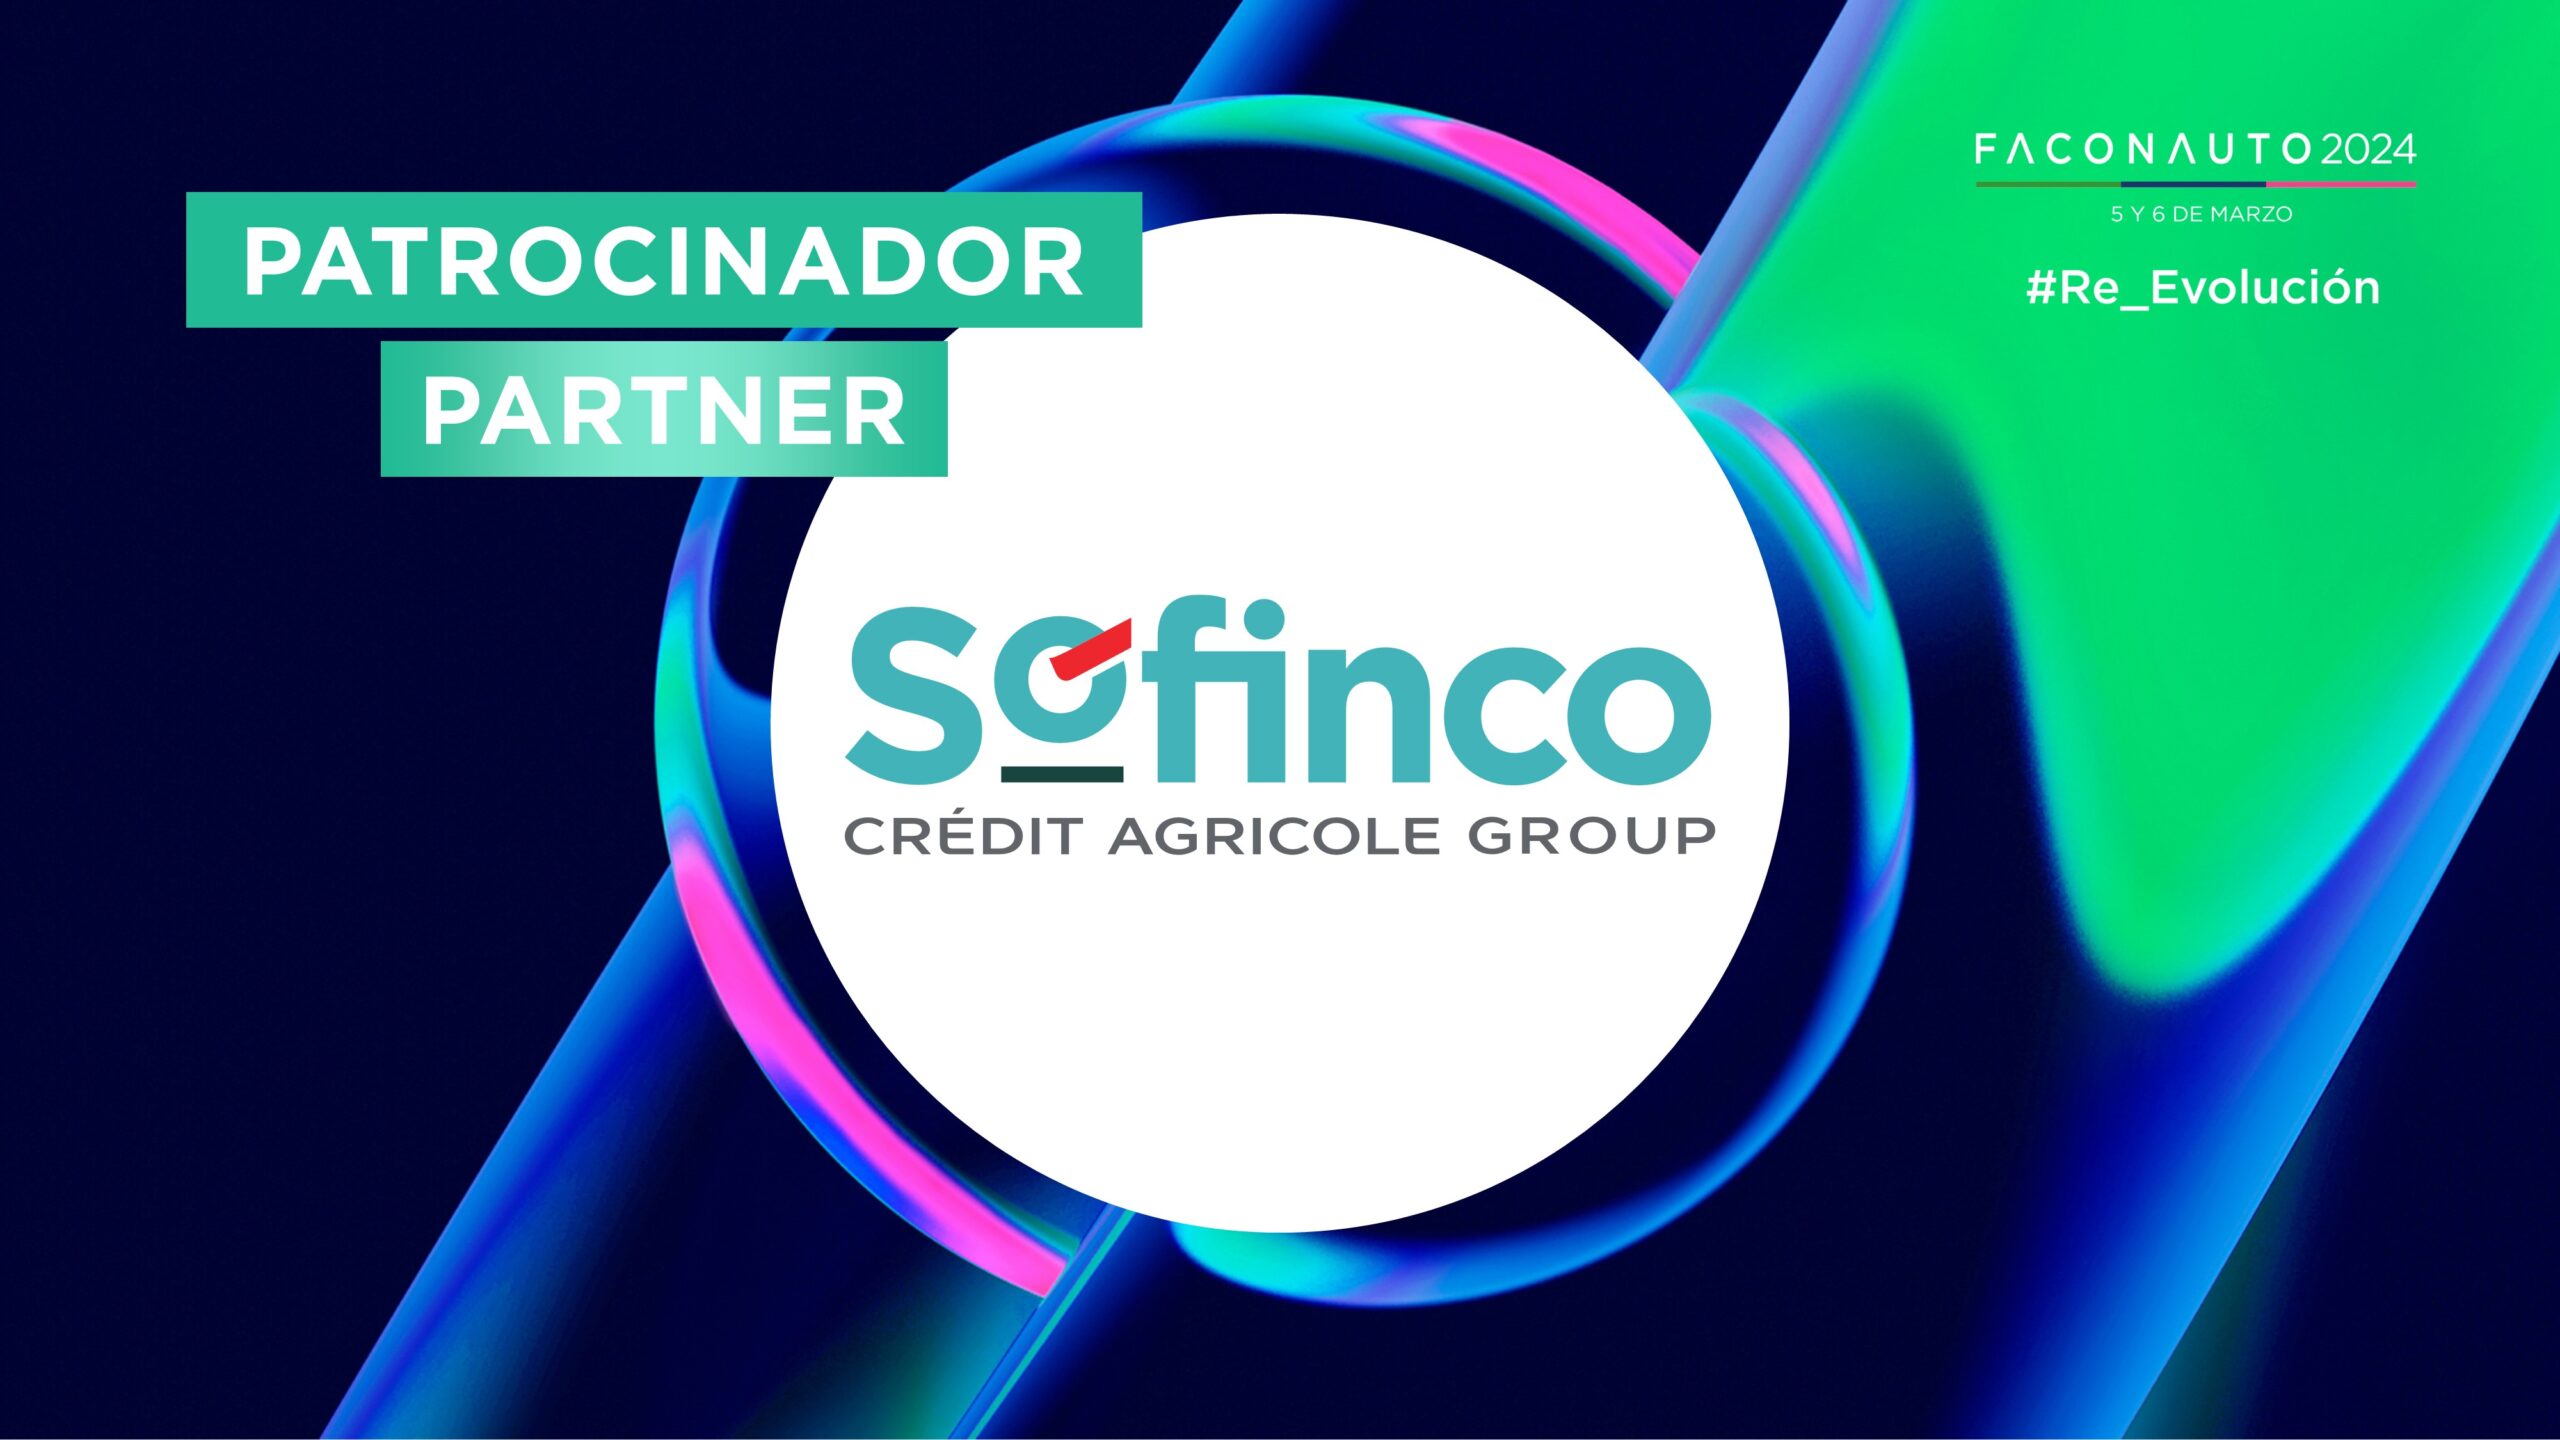 SOFINCO Patrocinador Faconauto